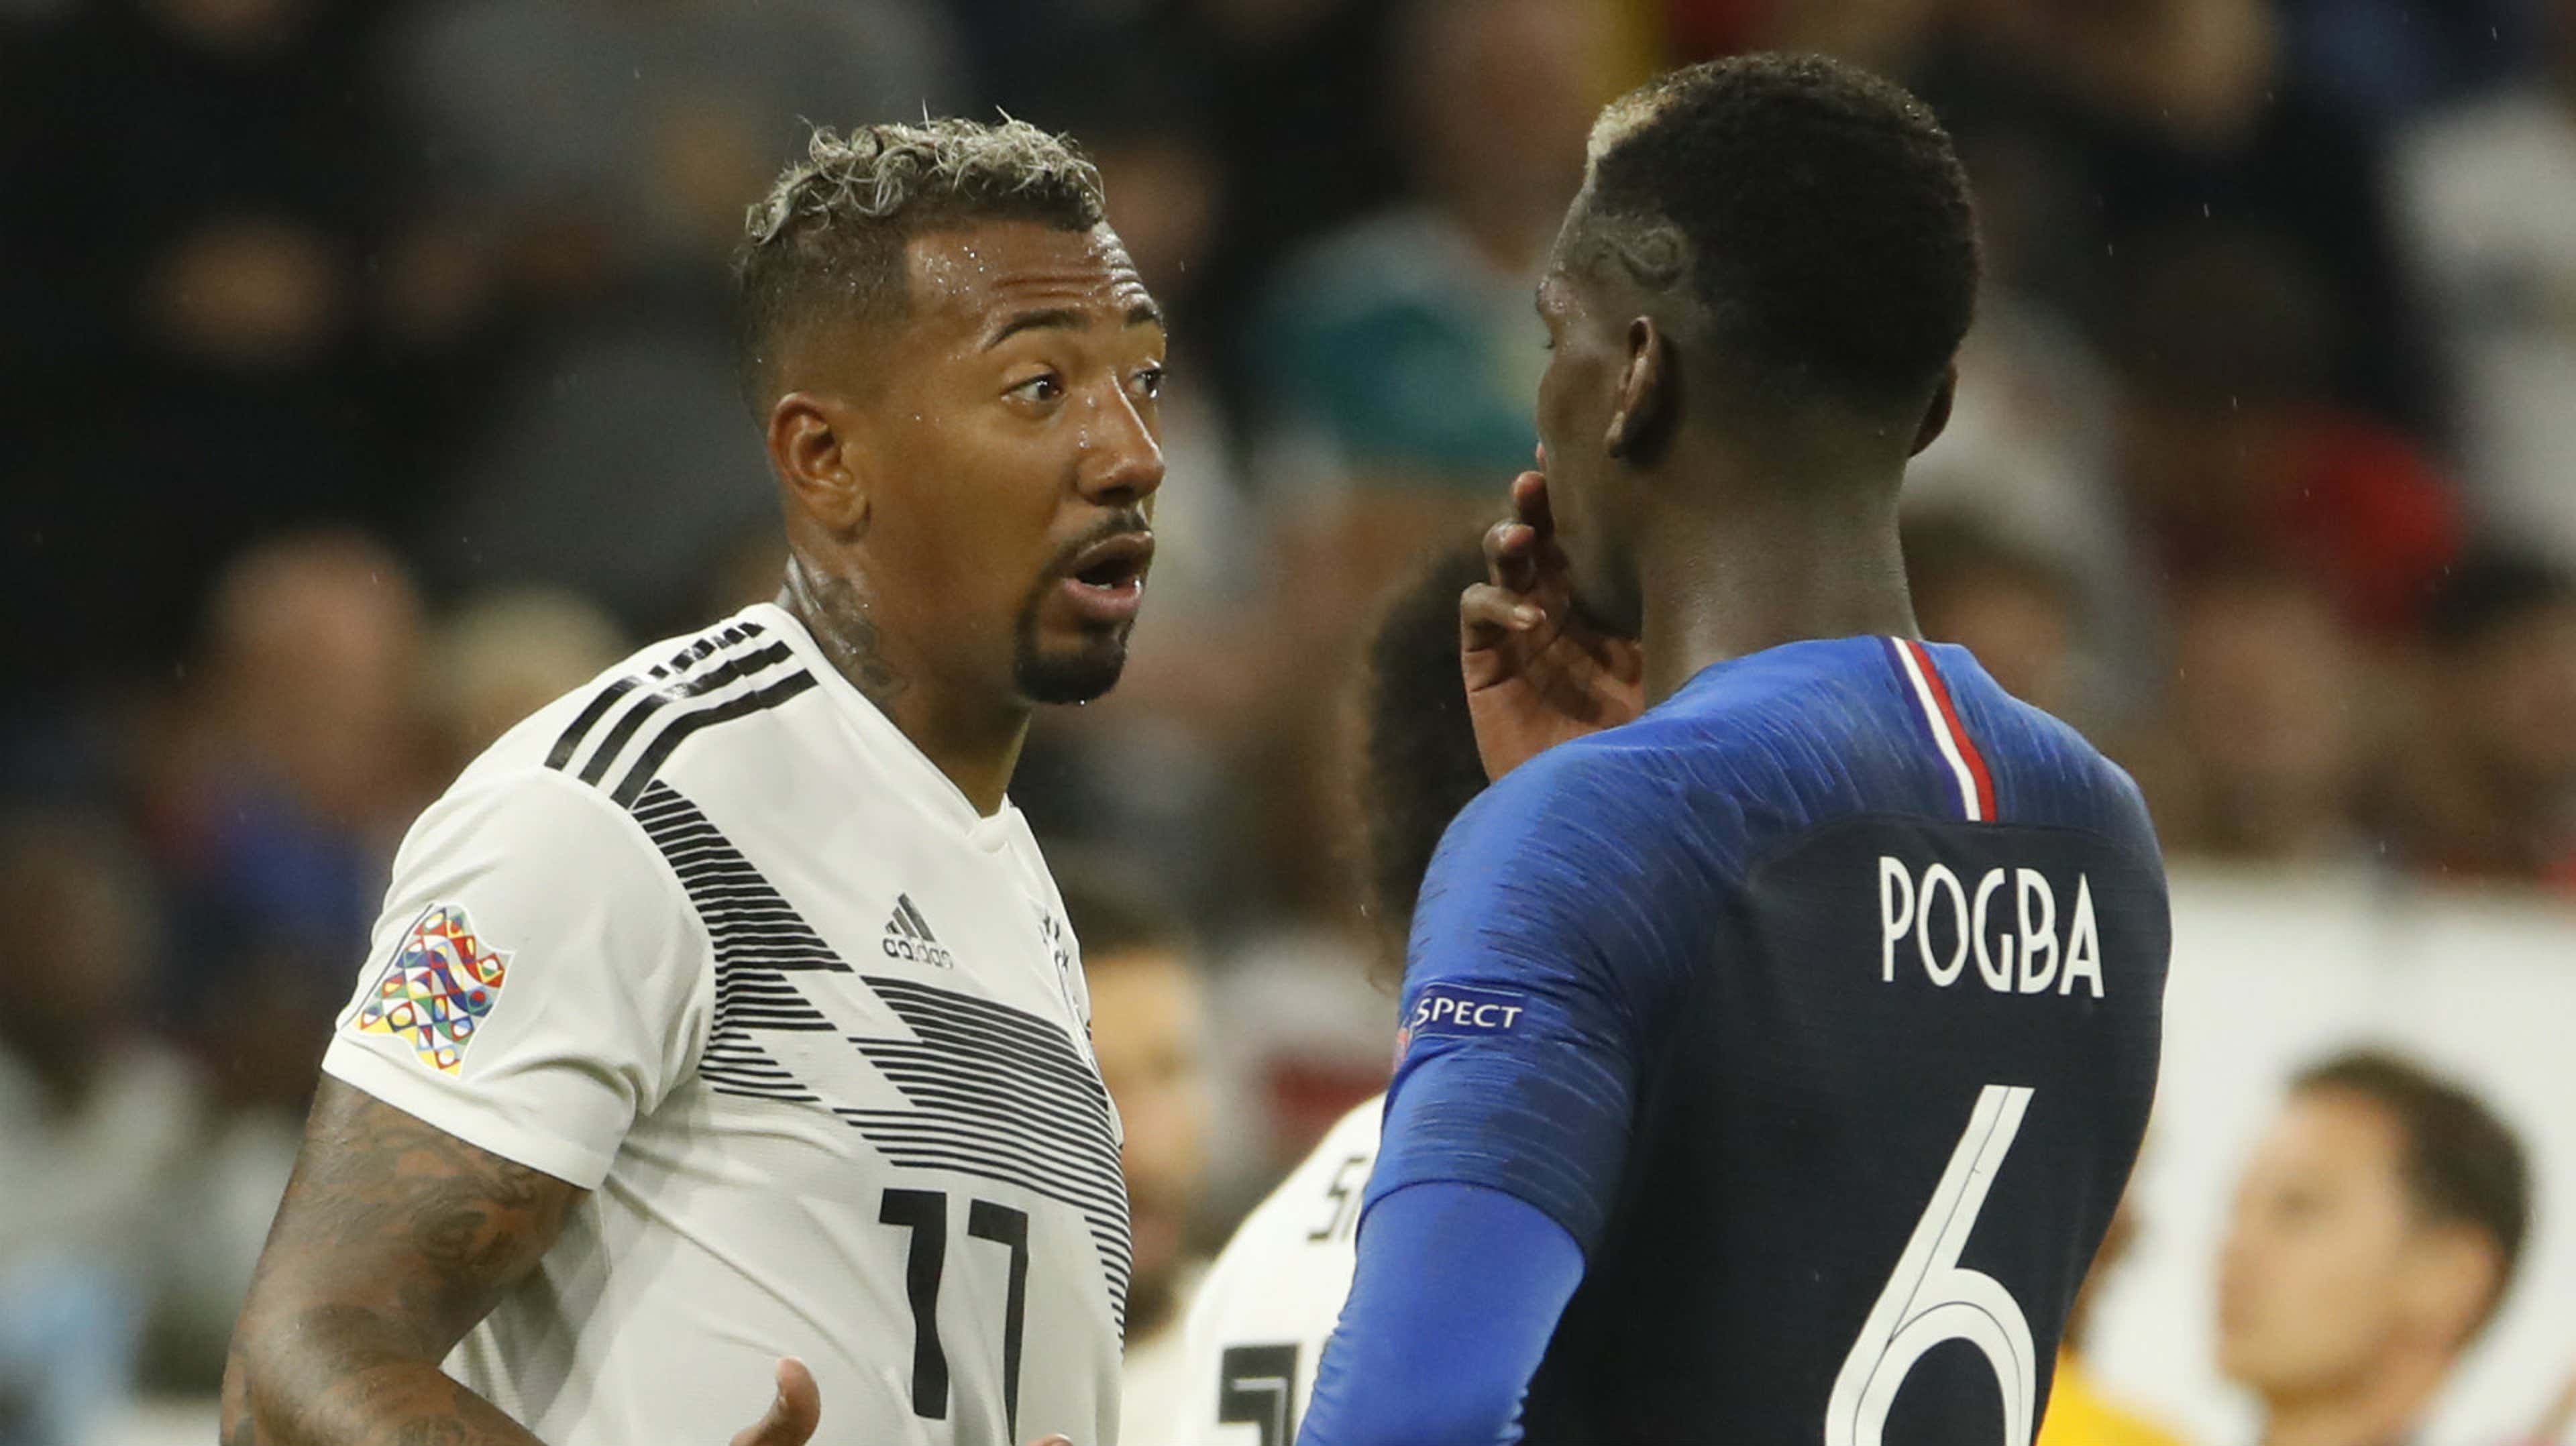 Jerome Boateng Paul Pogba Germany France 2018